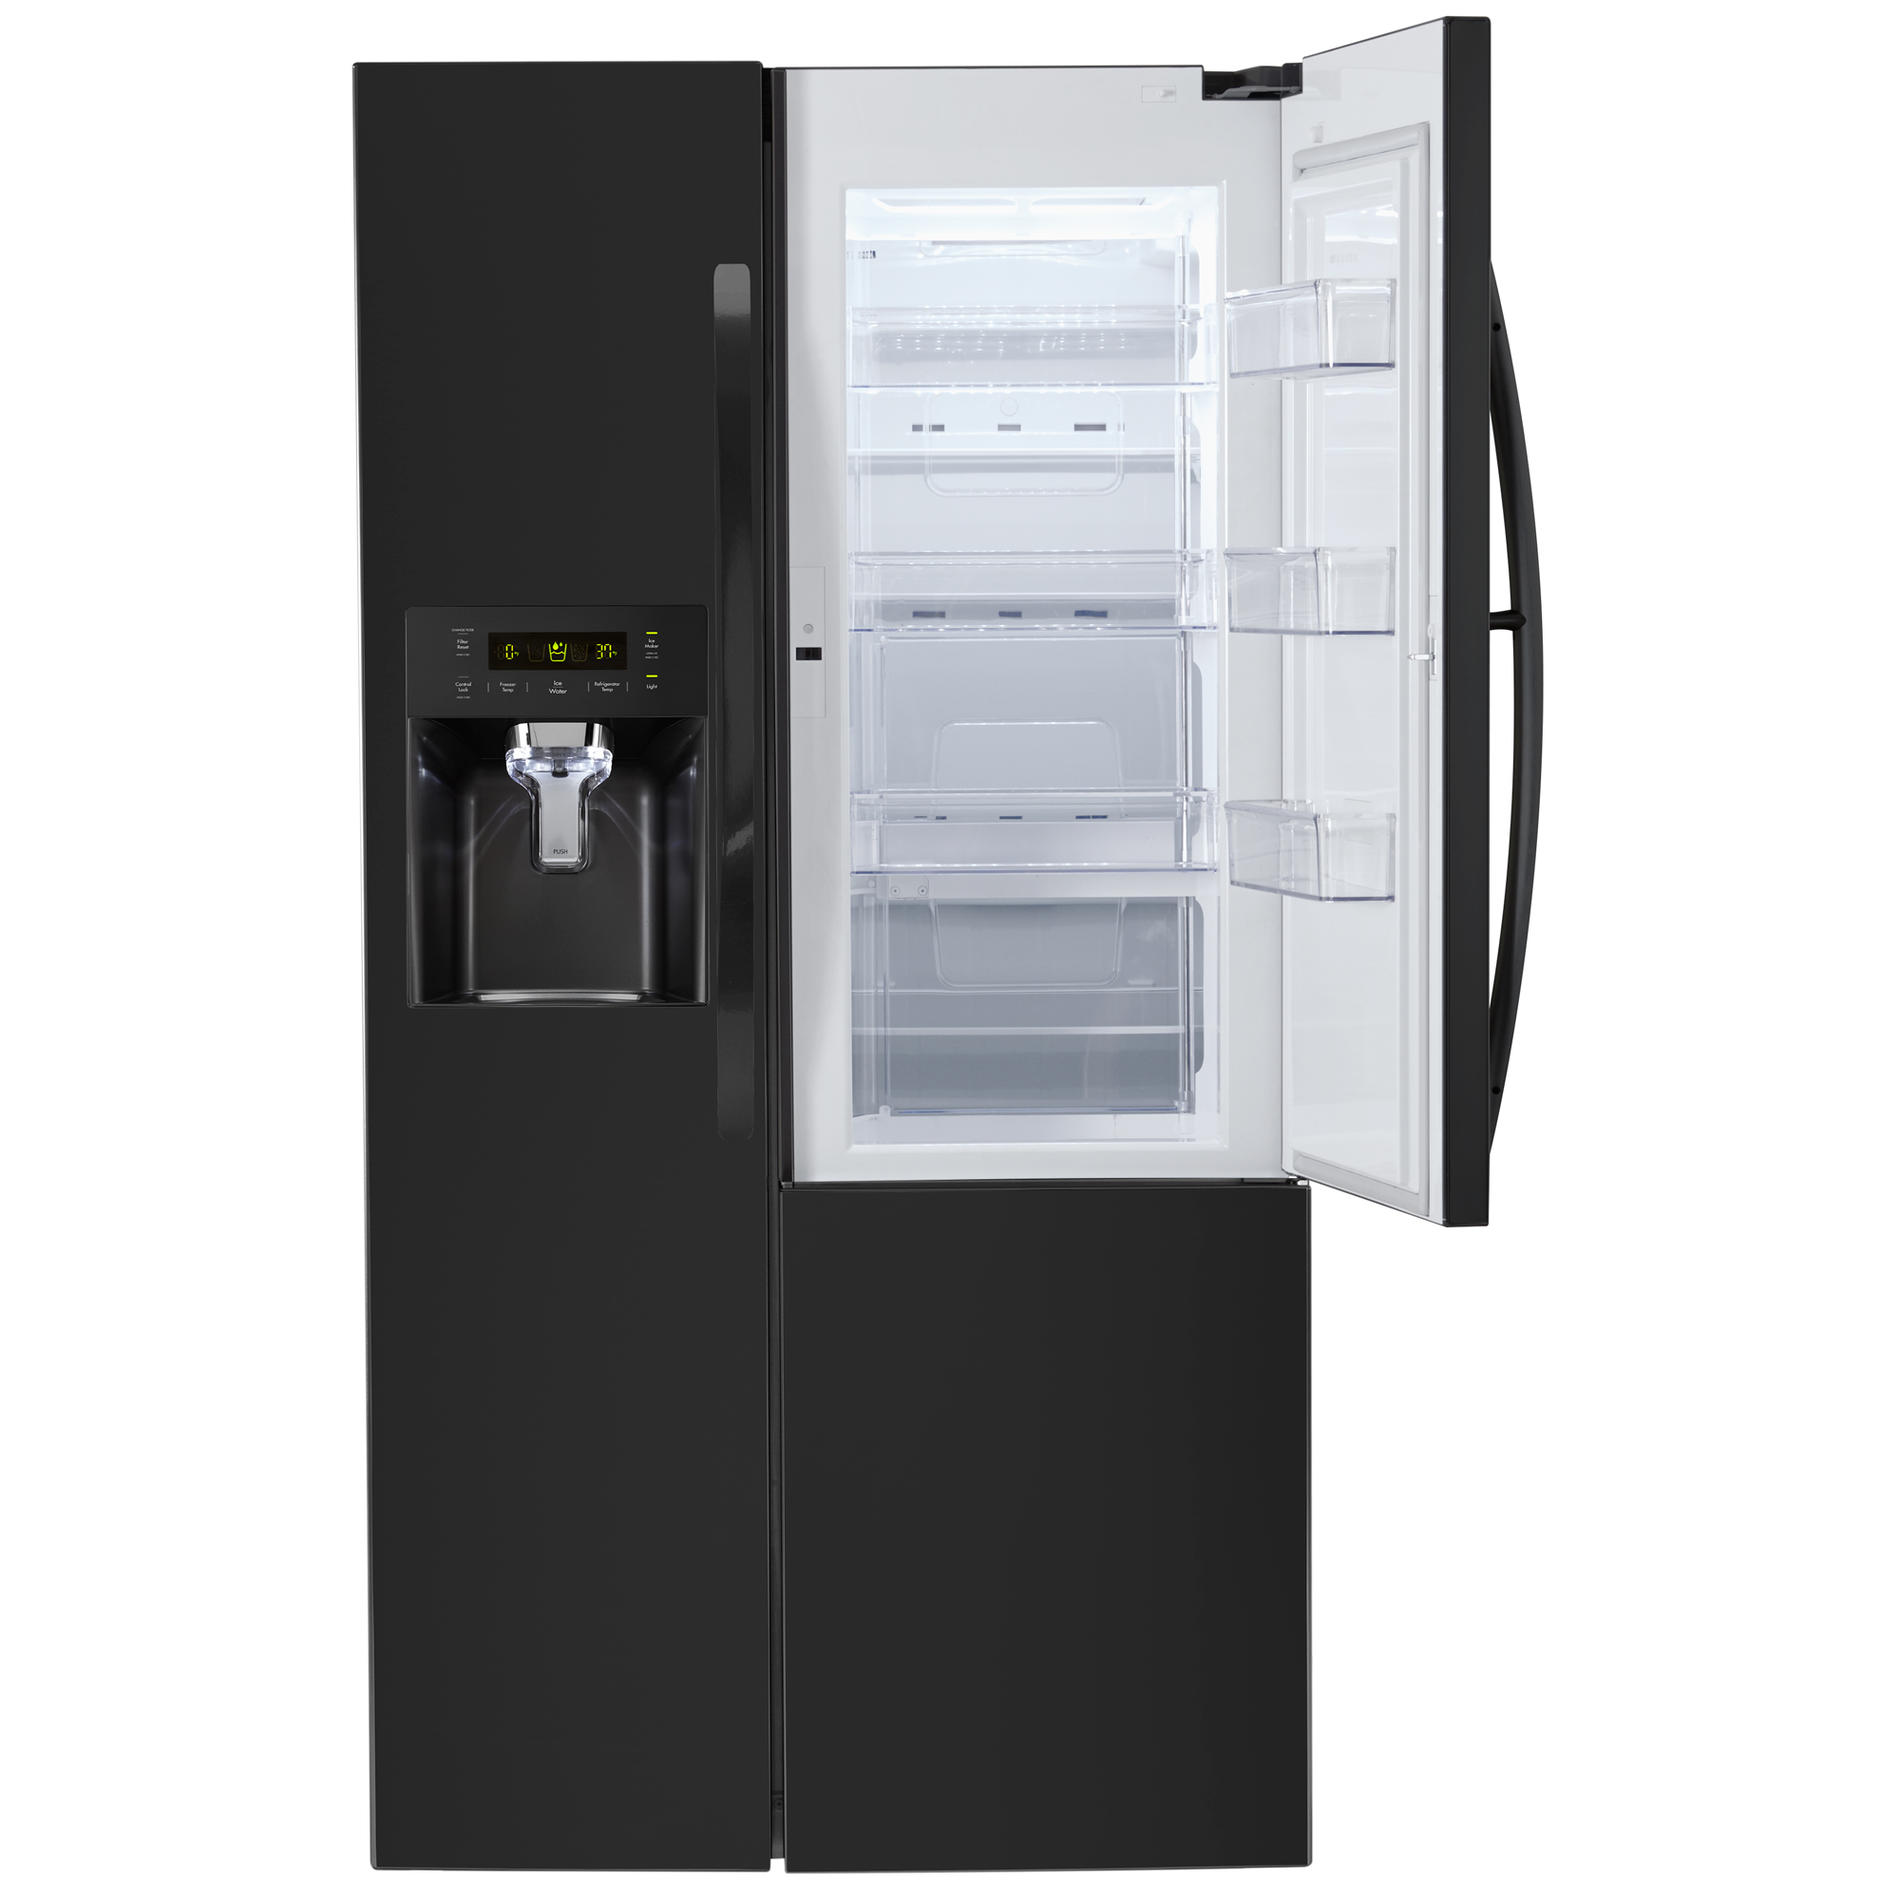 Kenmore 51839 26.1 cu.ft. Capacity Side-by-Side Refrigerator with Grab-N-Go Door